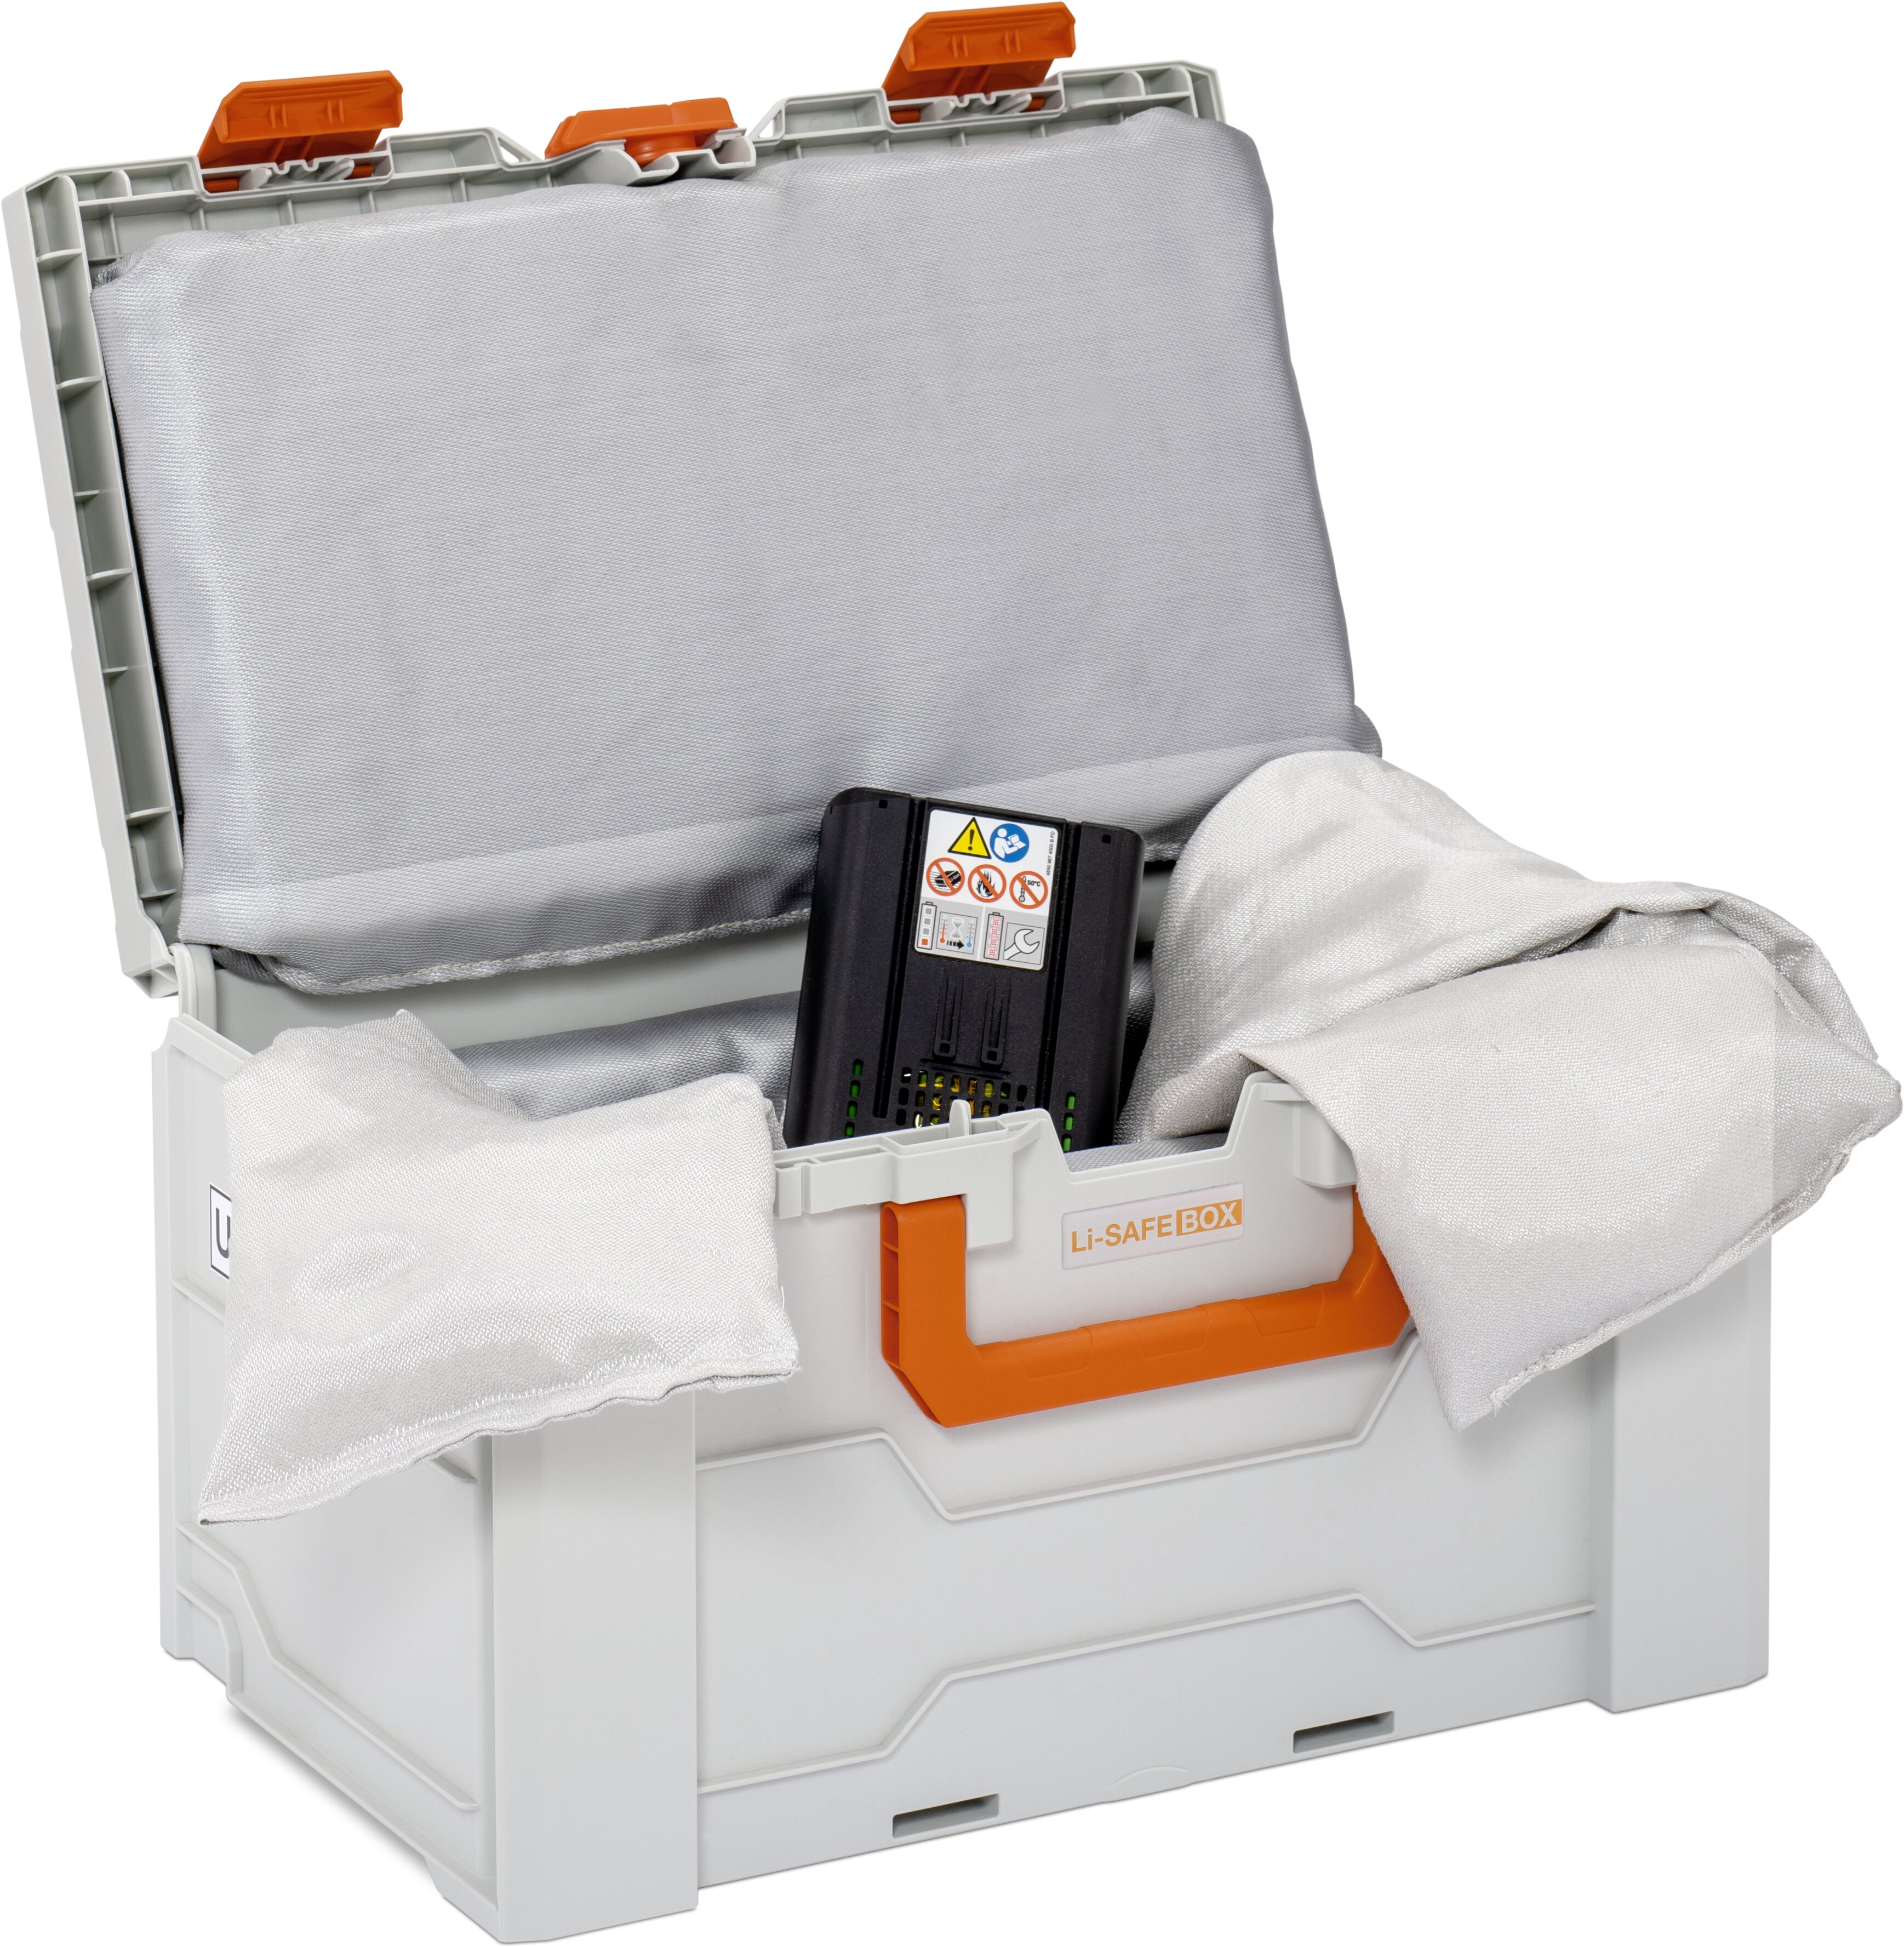 Akku-Systembrandschutzbox Li-SAFE Größe 2-L mit UN-Zulassung und Spezialkissen